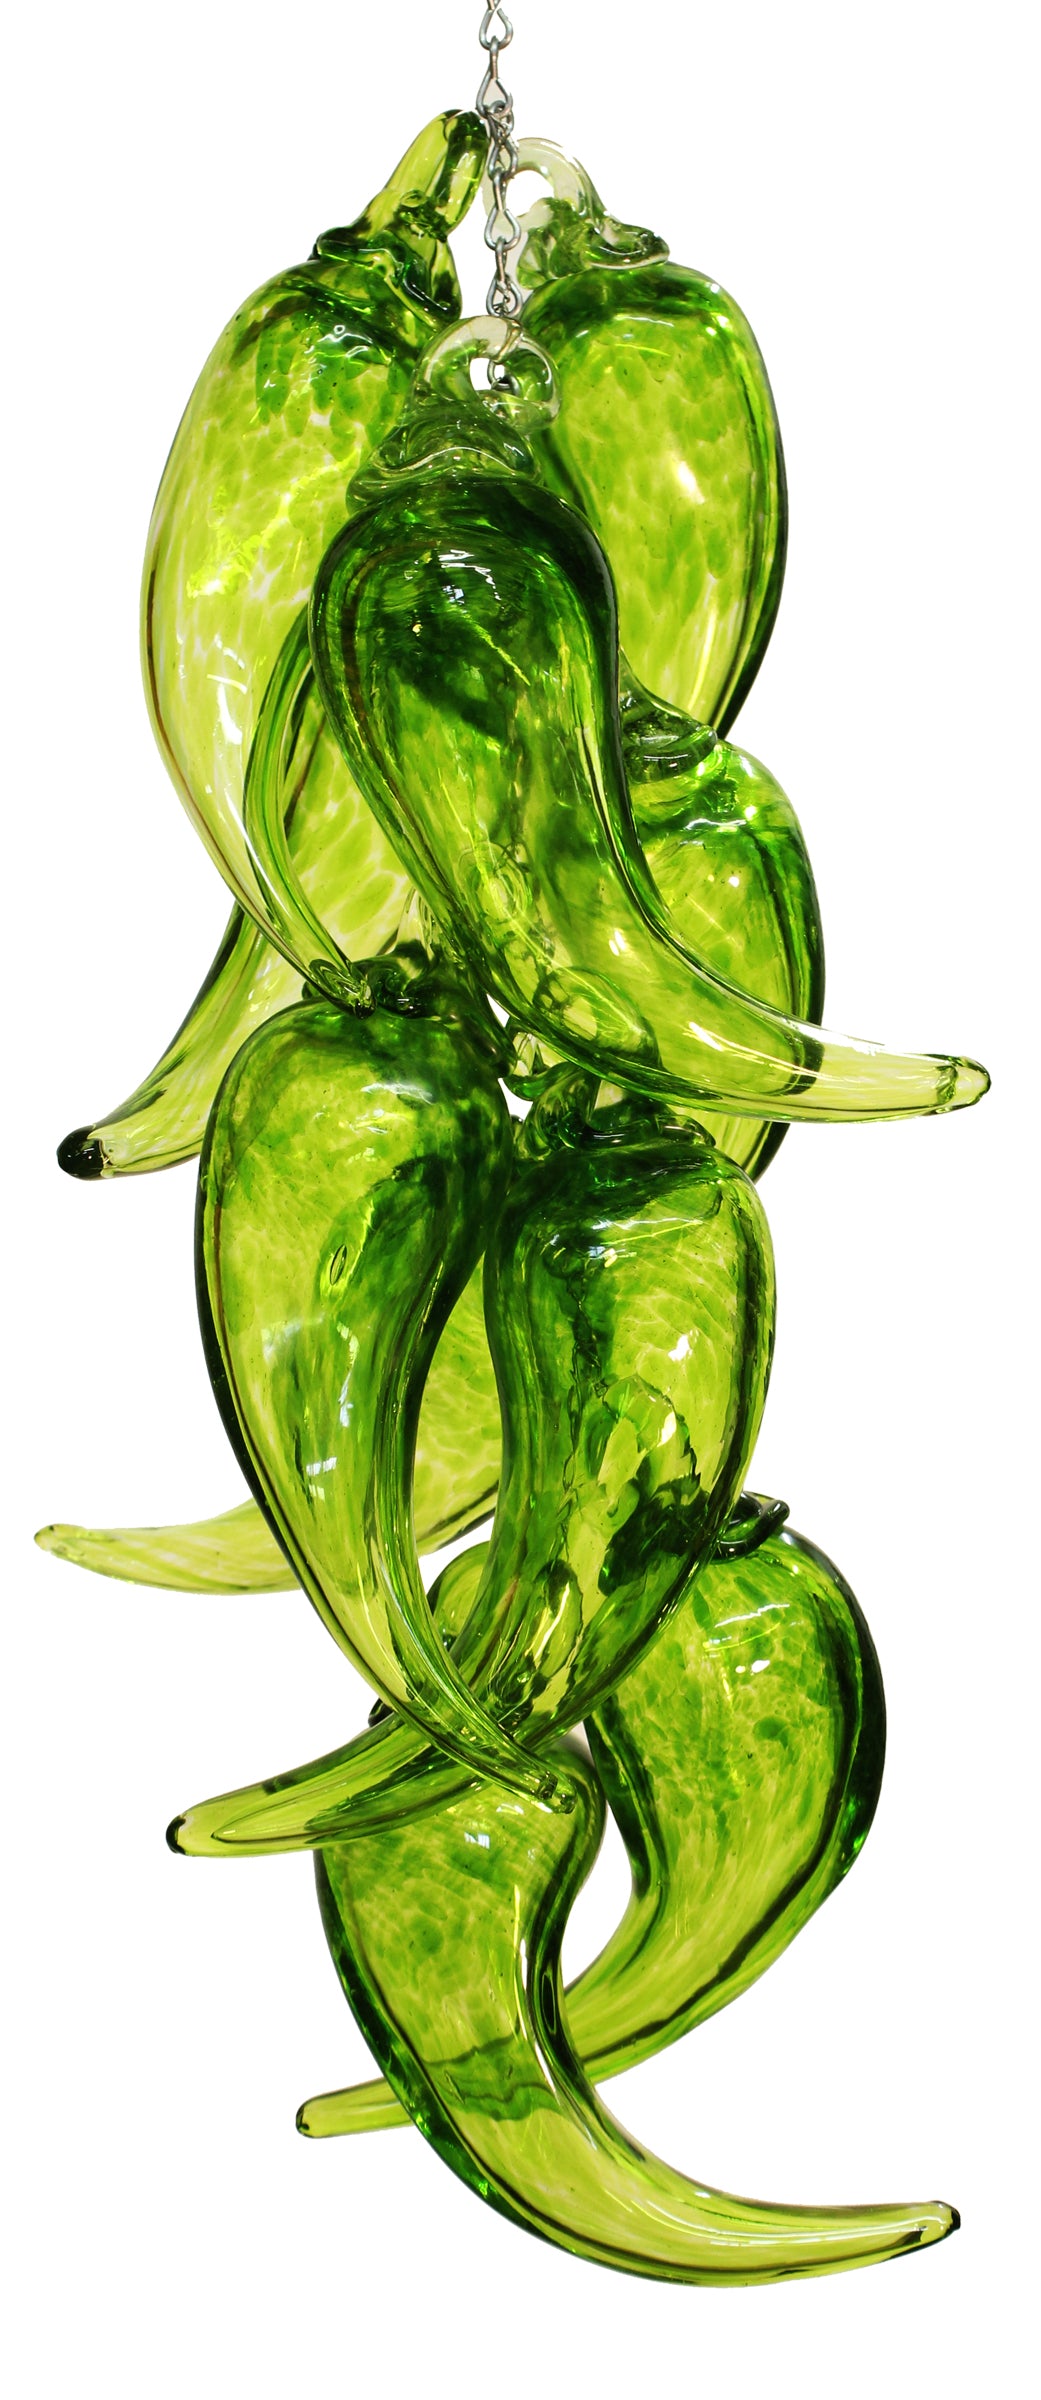 Chili Pepper Ristra - Green